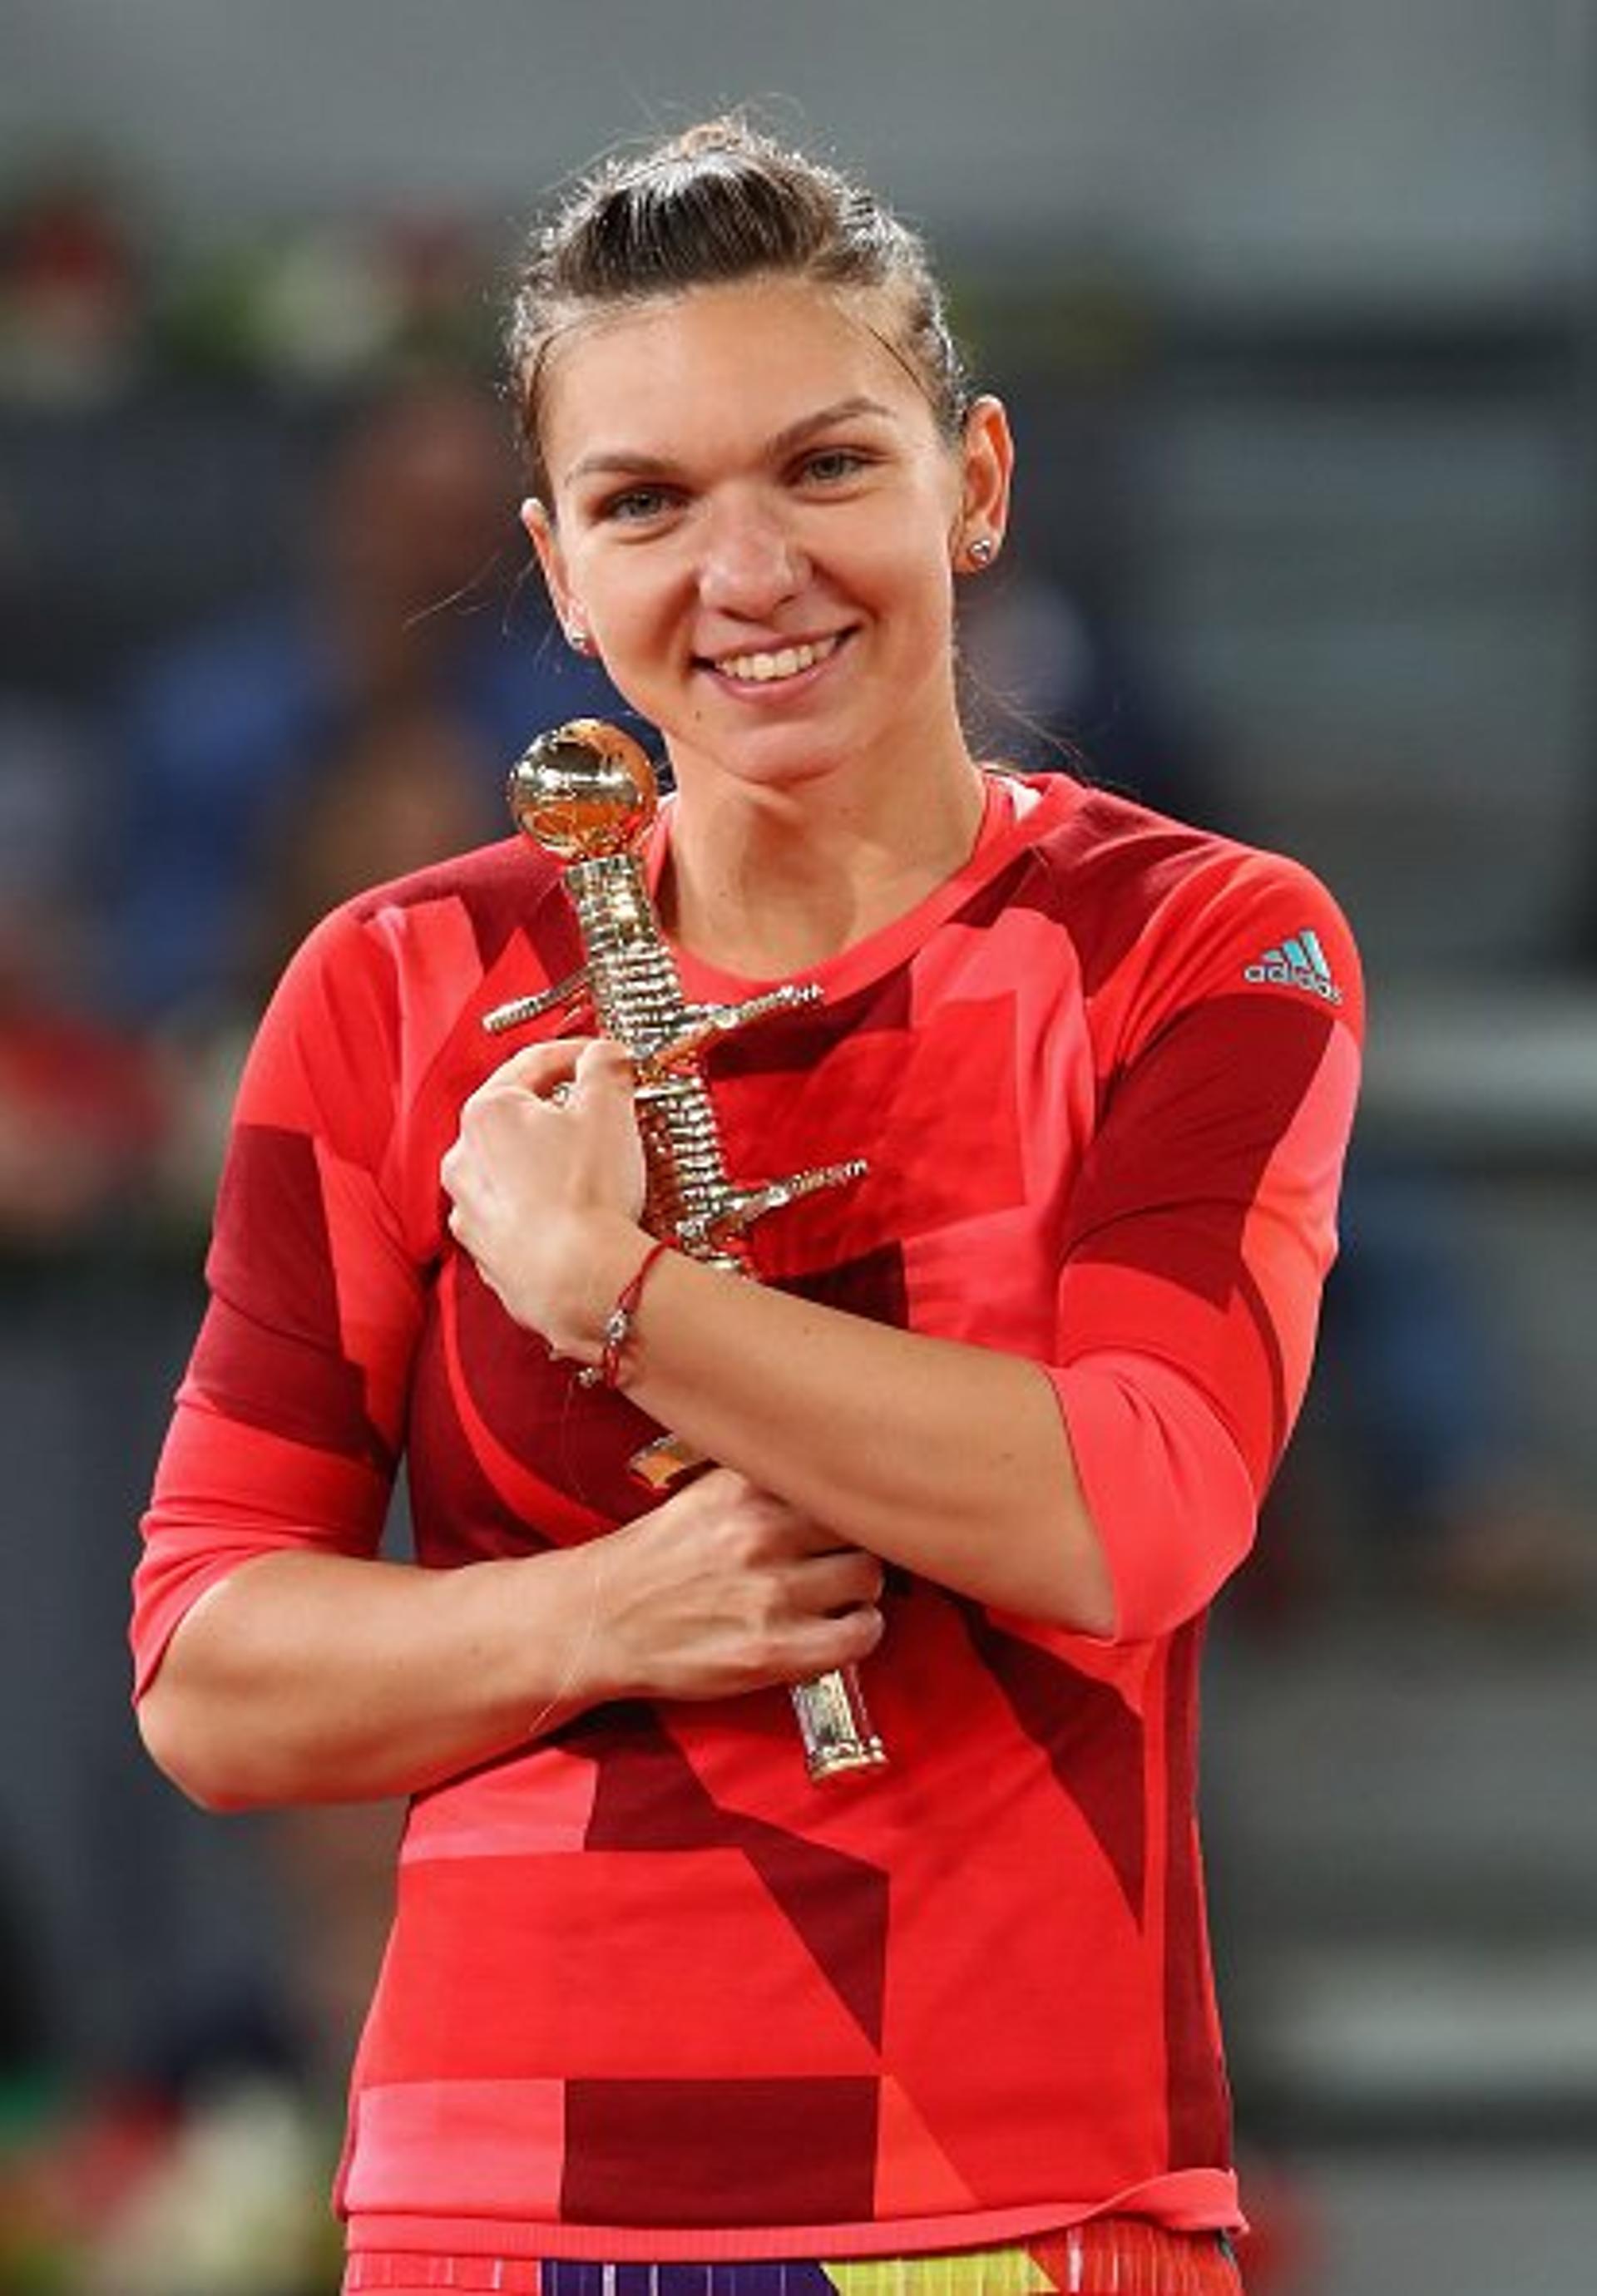 Simona Halep com o troféu do WTA Premier de Madri 2016